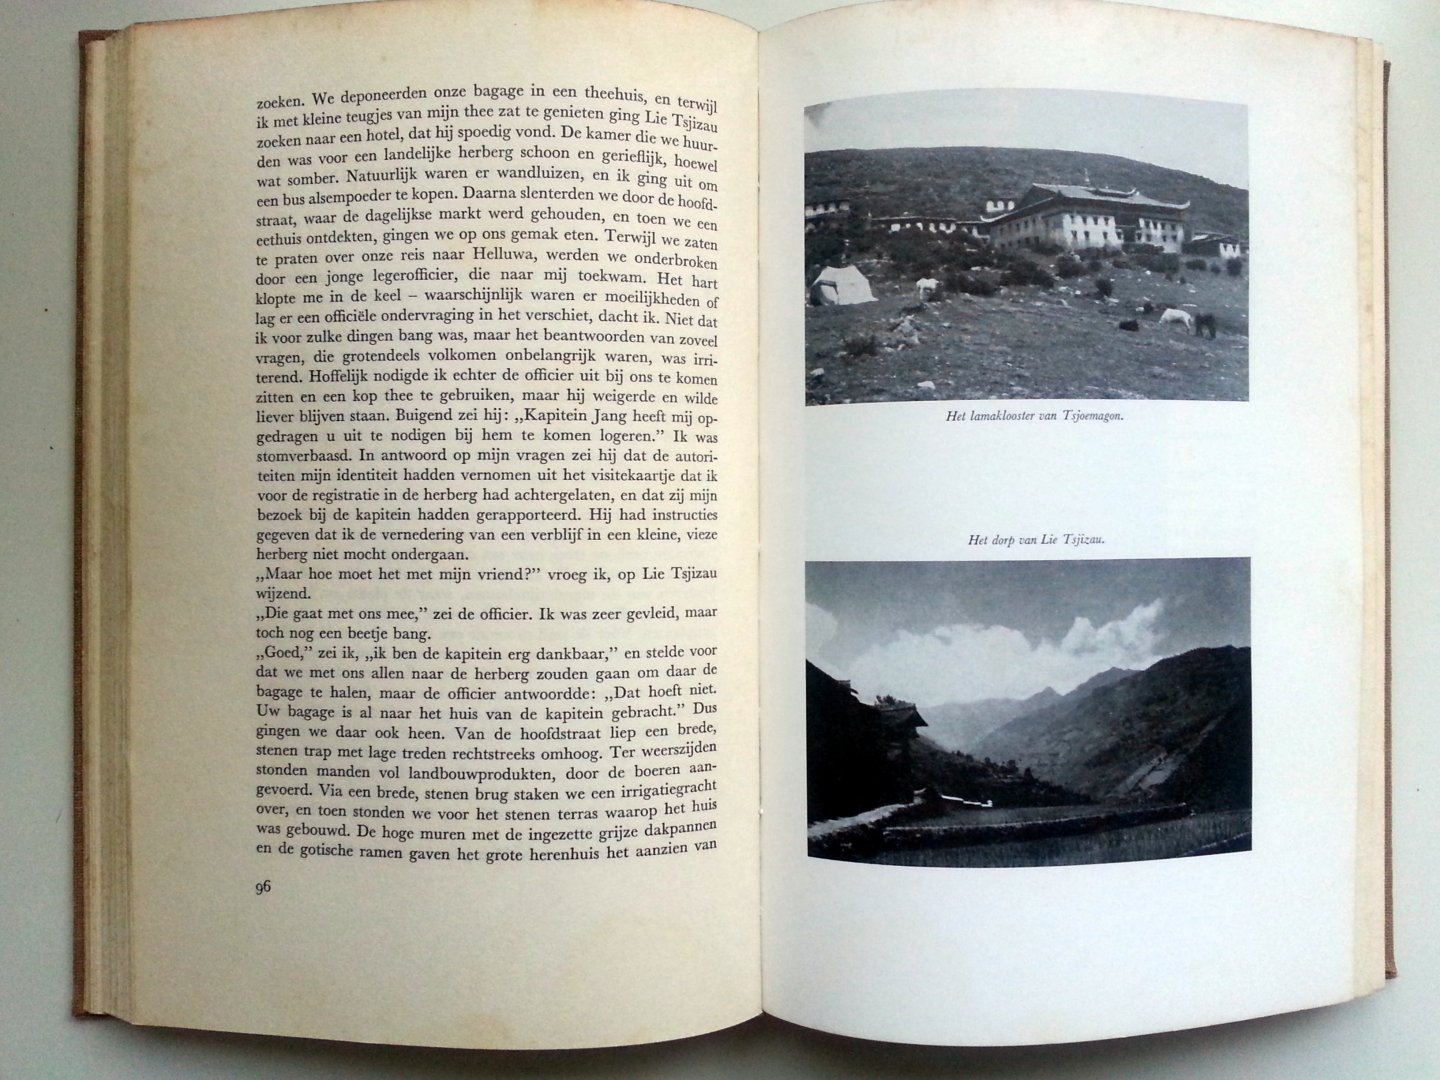 Goullart, Peter - De geheimzinnige Lolo's (Ex.1) (Het leven in het Tibetaanse grensgebied)